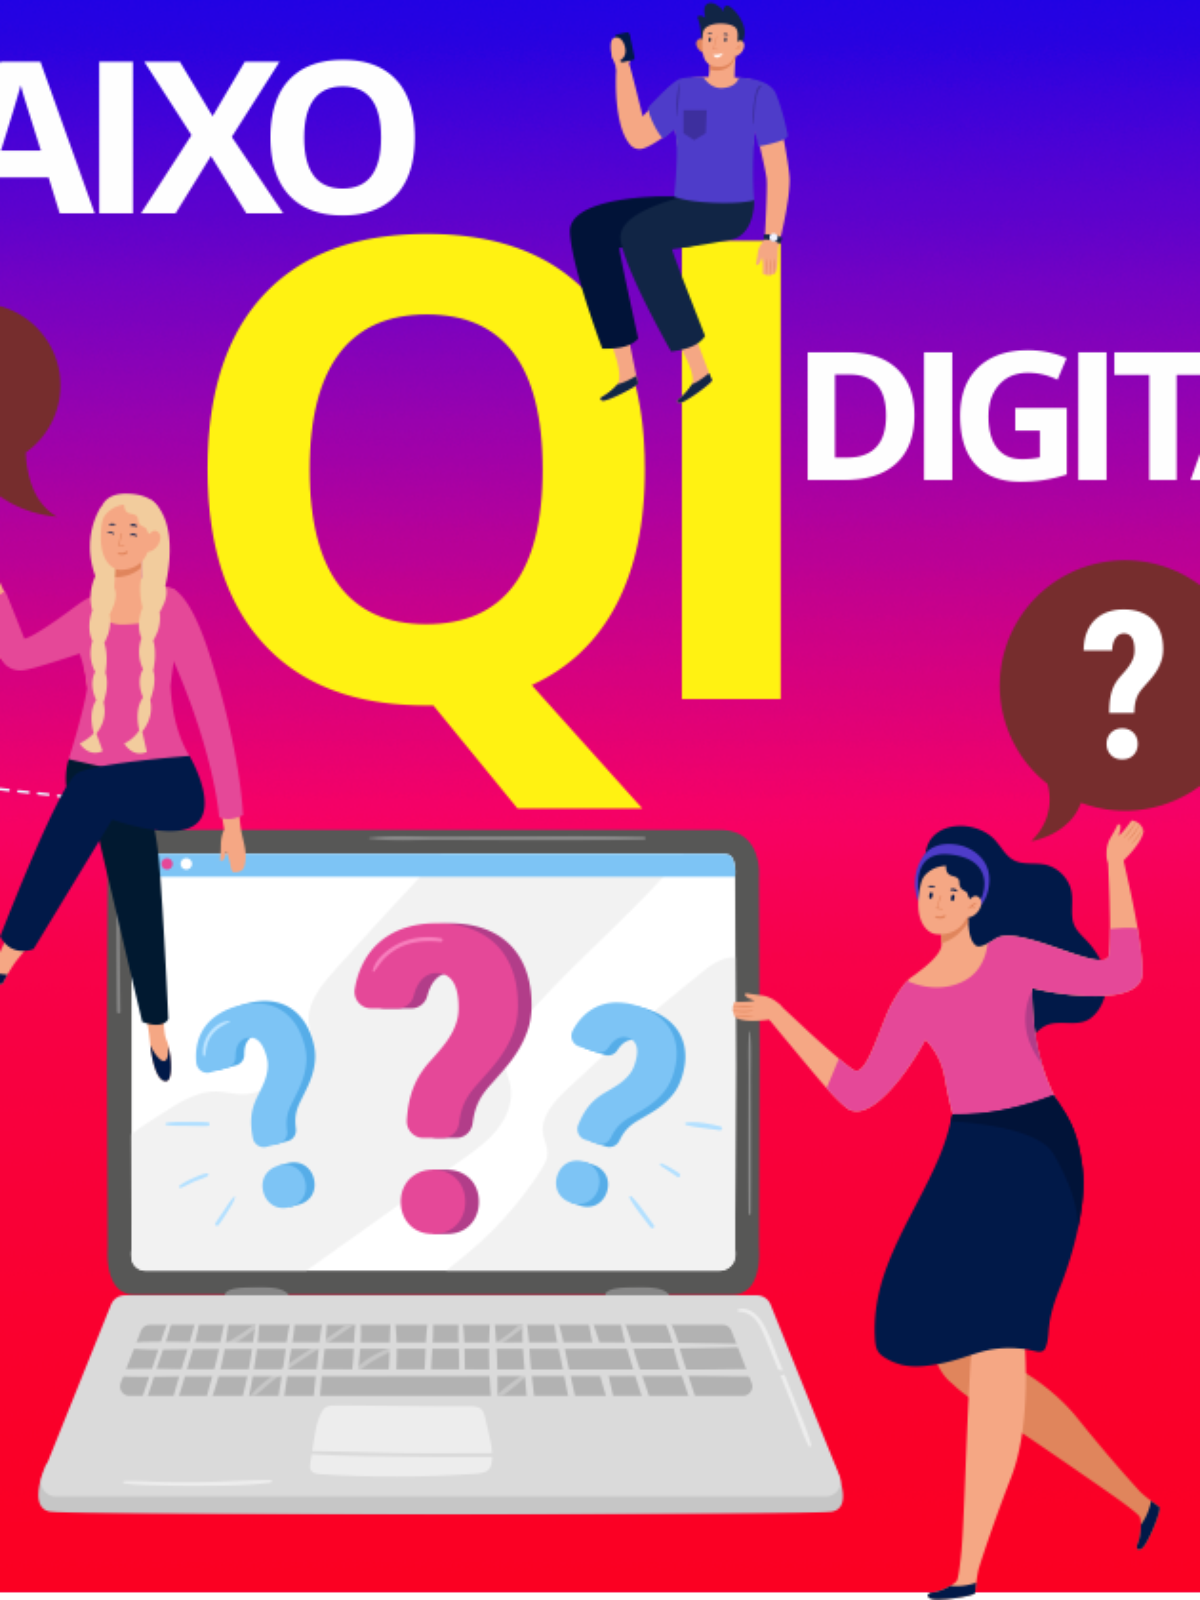 QD Quociente Digital - o novo QI e QE da era digital